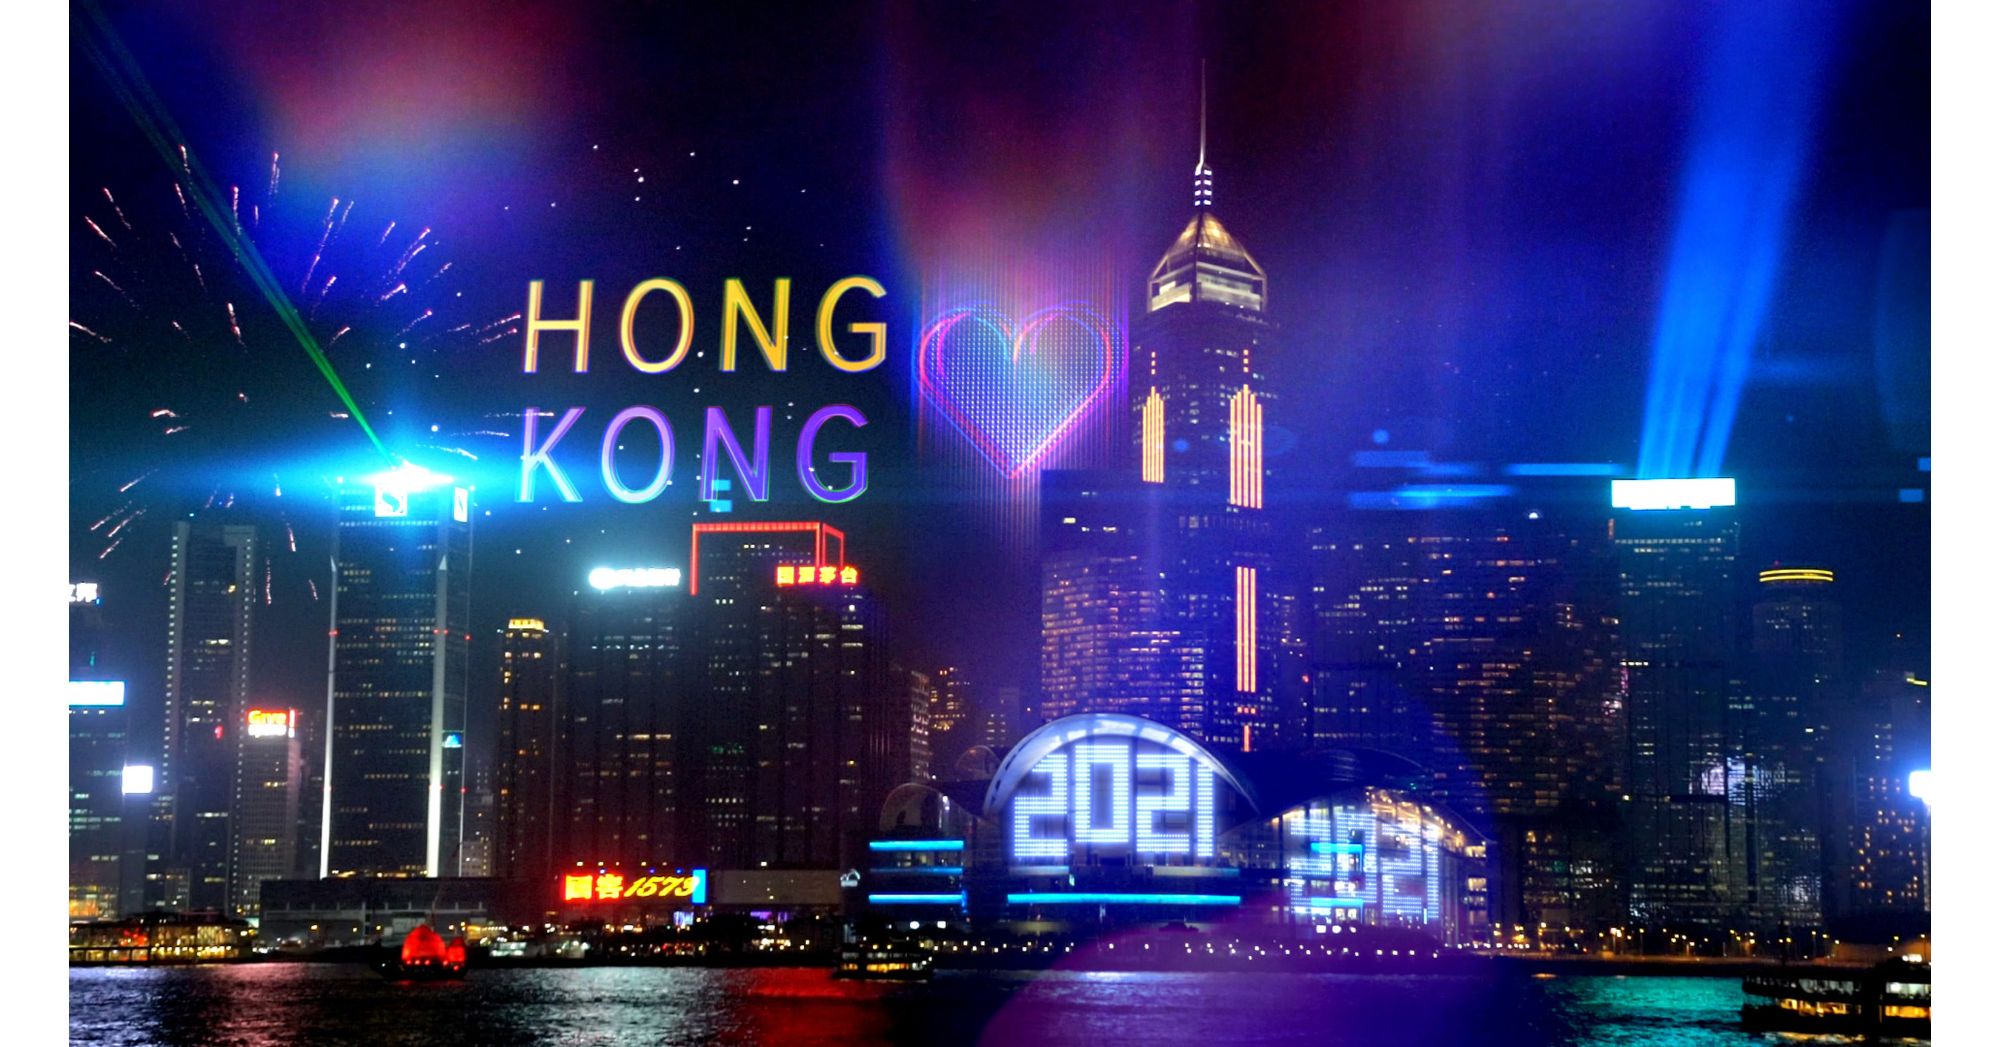 Tết Nguyên đán ở Hongkong có gì?